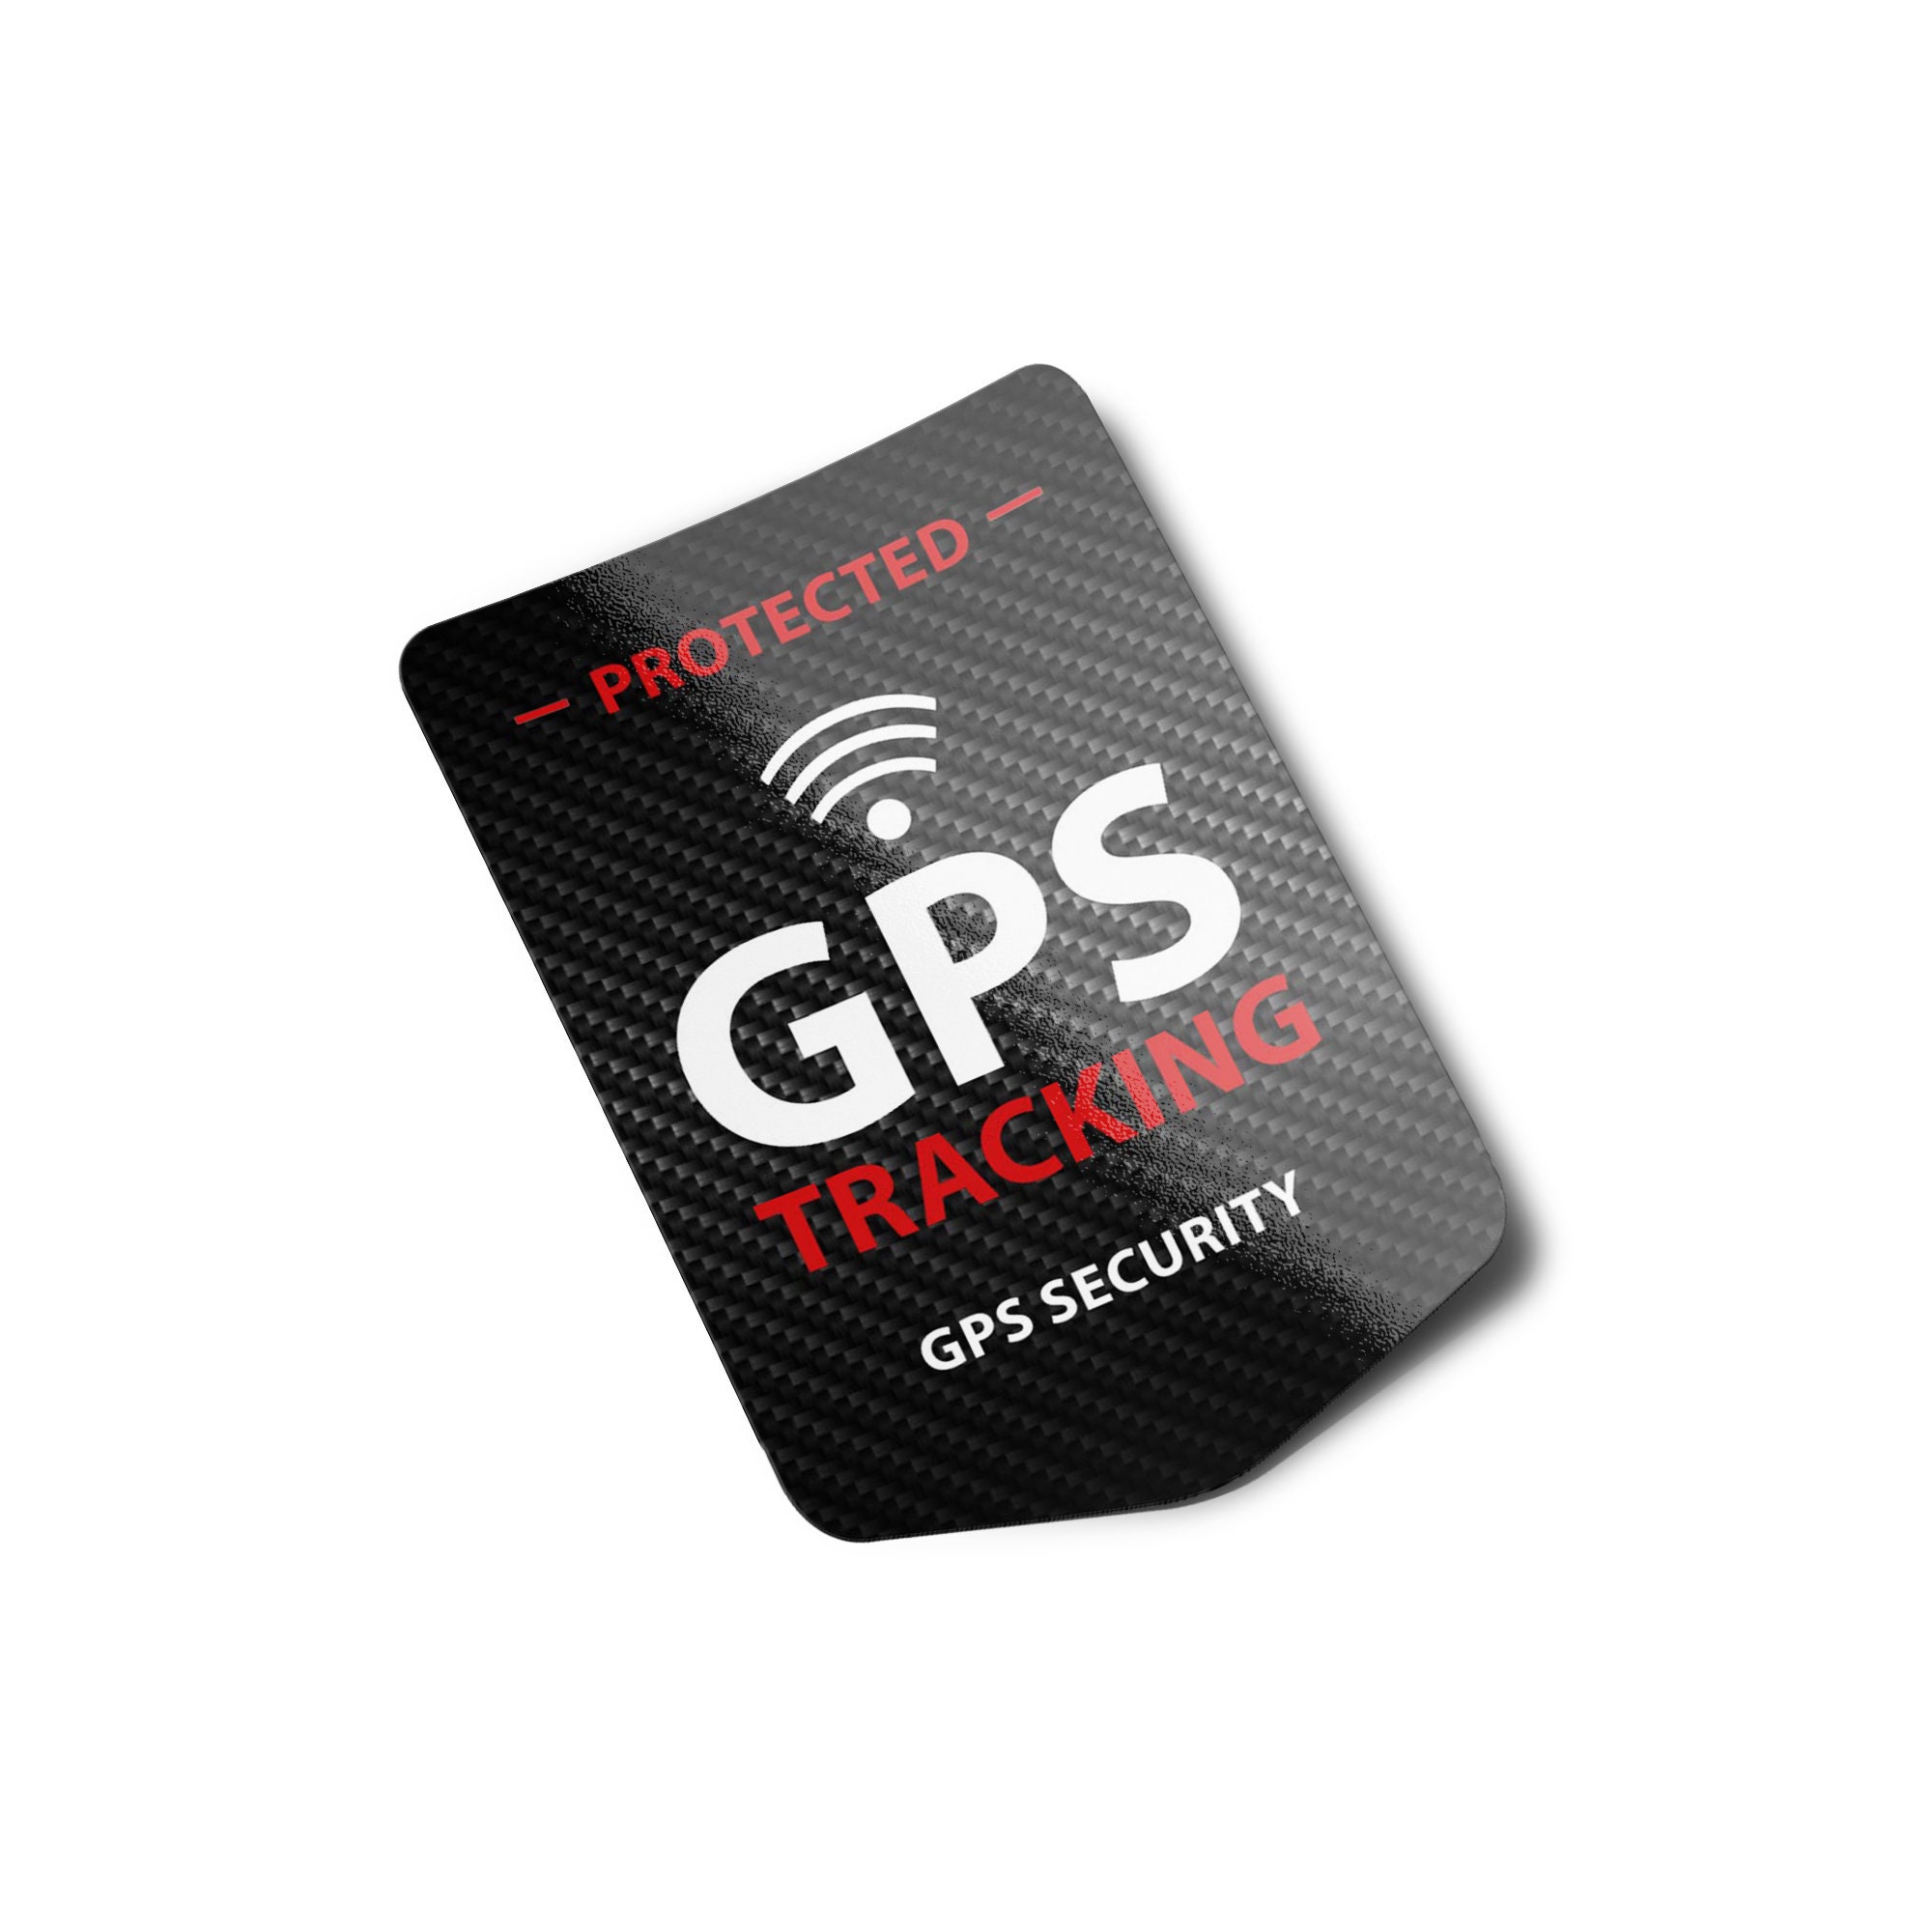 Auto Alarm Aufkleber - alarmgesichert Attrappe sticker mit gps tracking Text